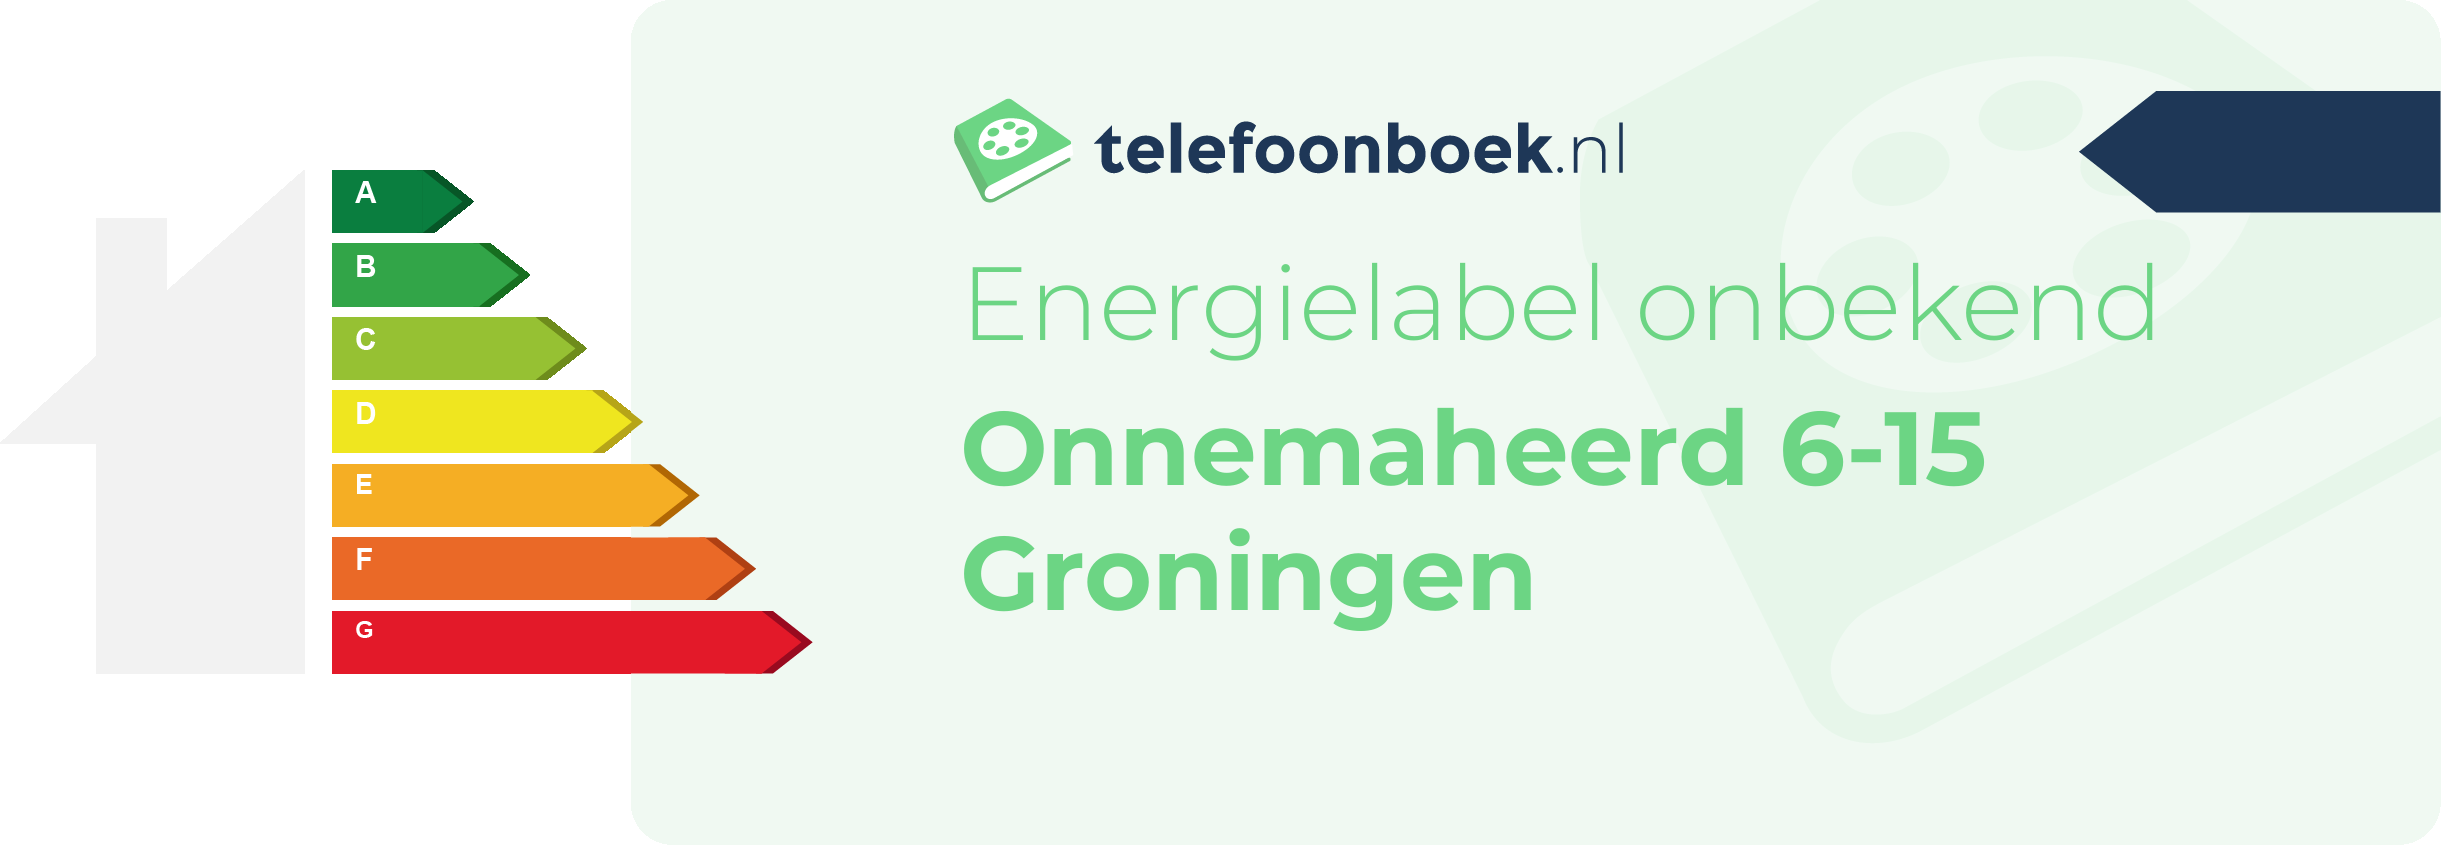 Energielabel Onnemaheerd 6-15 Groningen